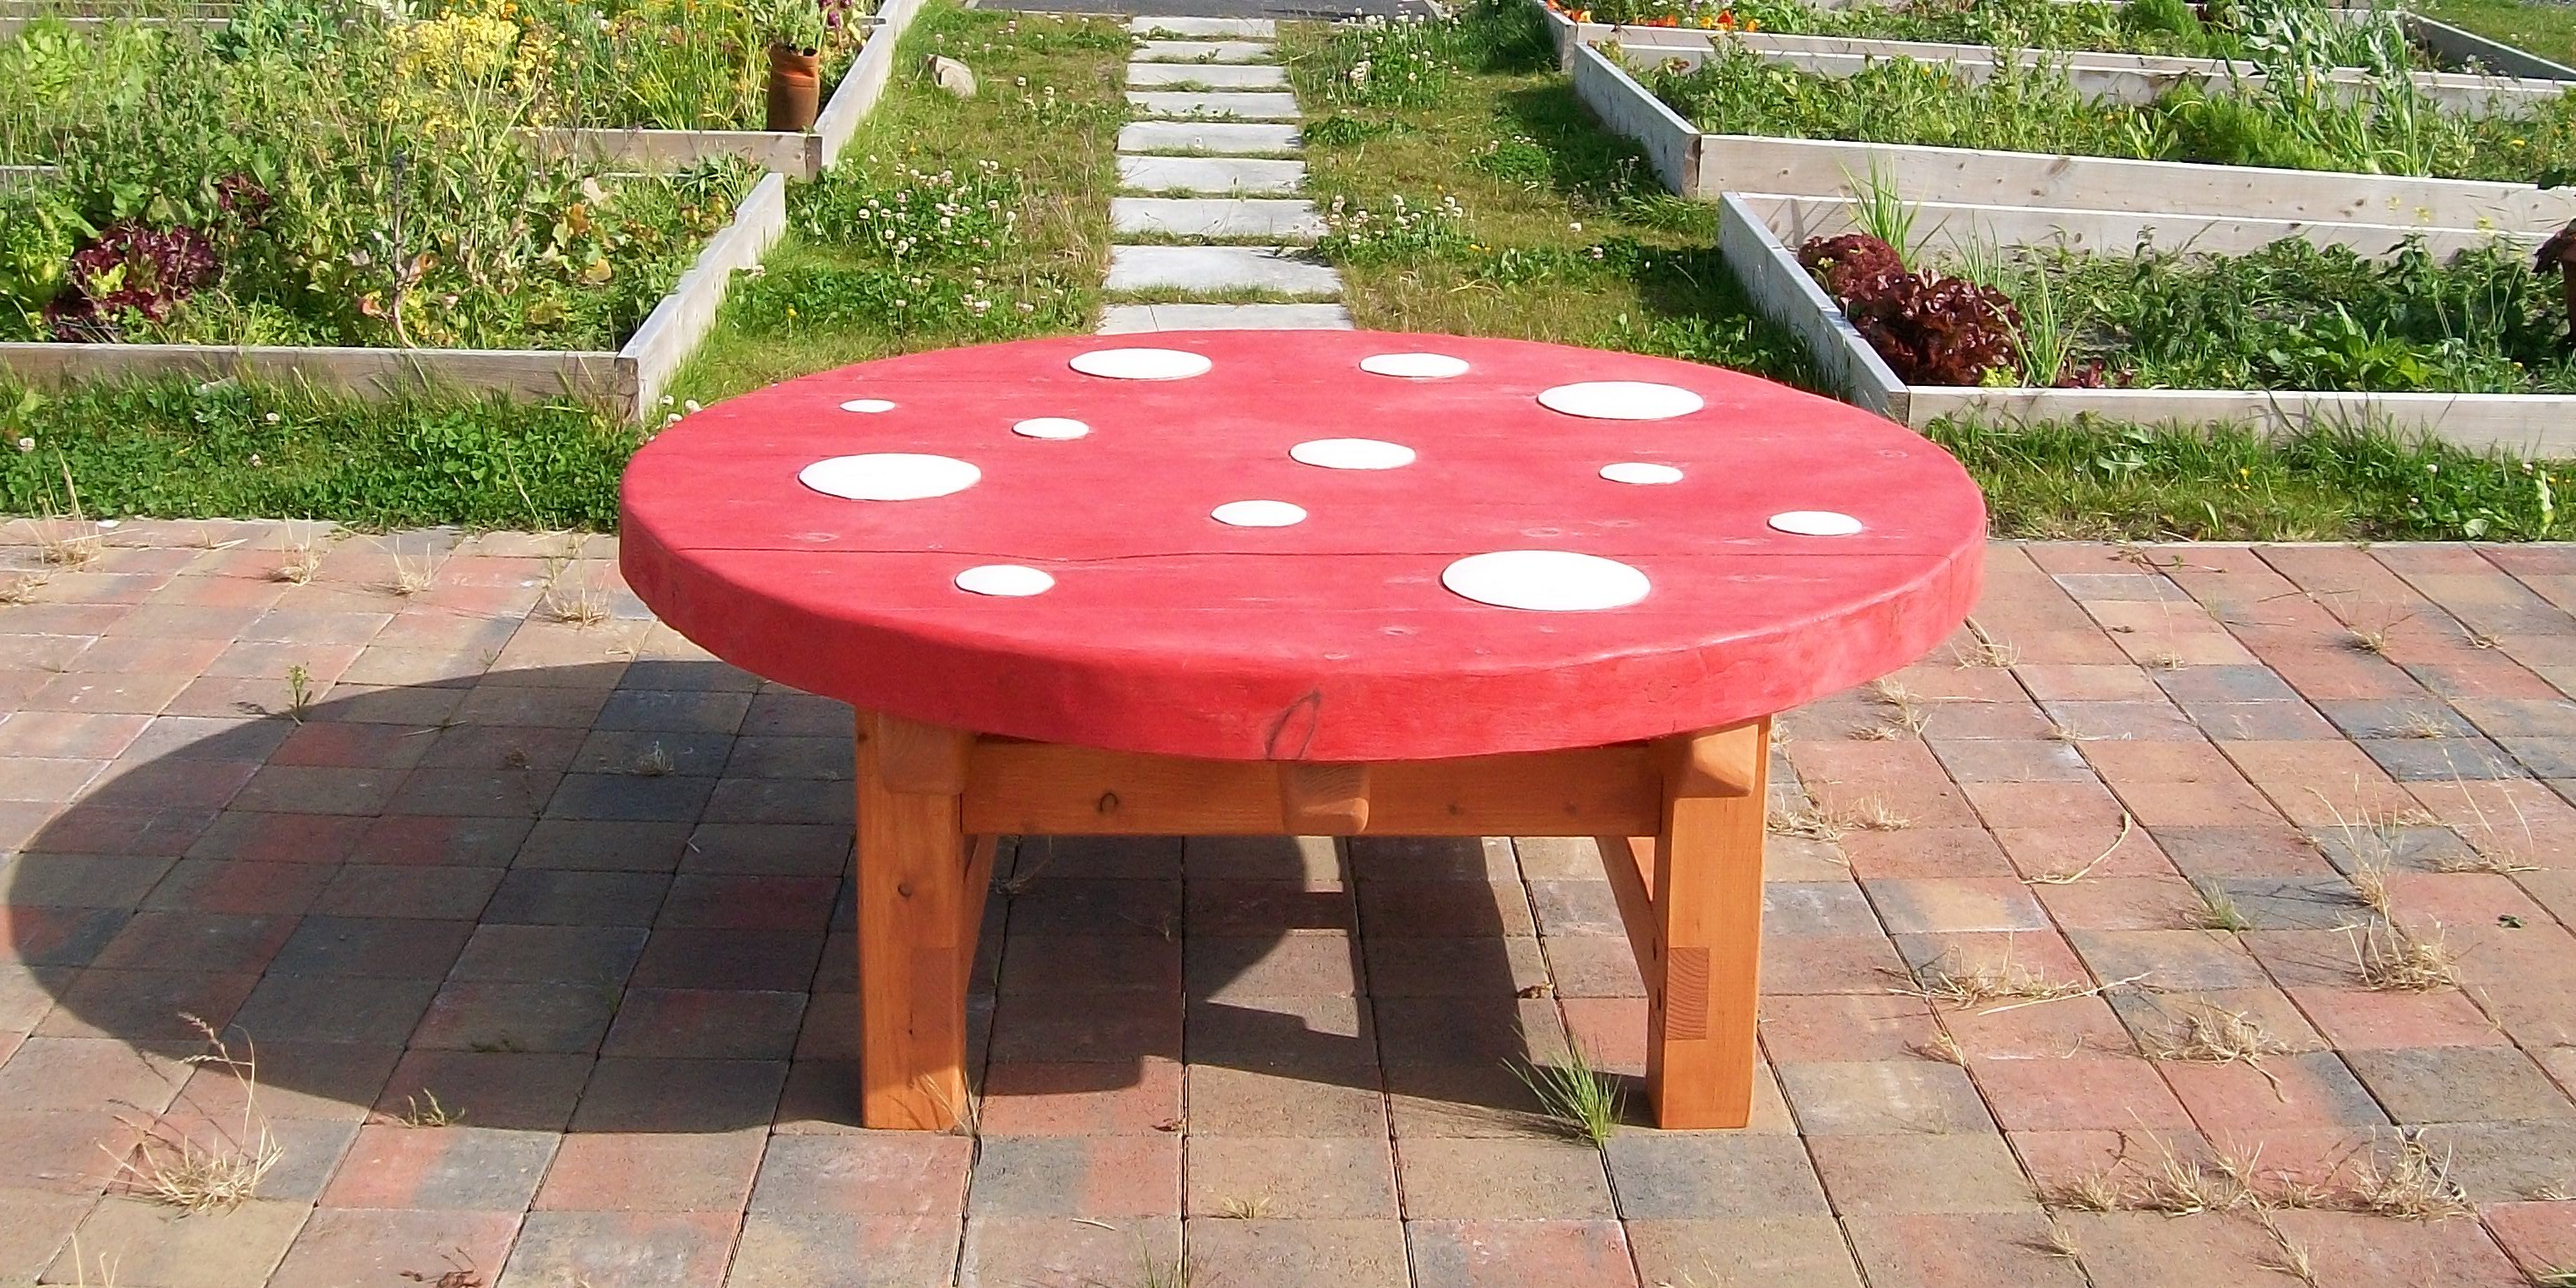 mushroom table, gardens , friendship table, garden furniture, sculpture, school playground, bespoke, designed by pupils, eco garden,